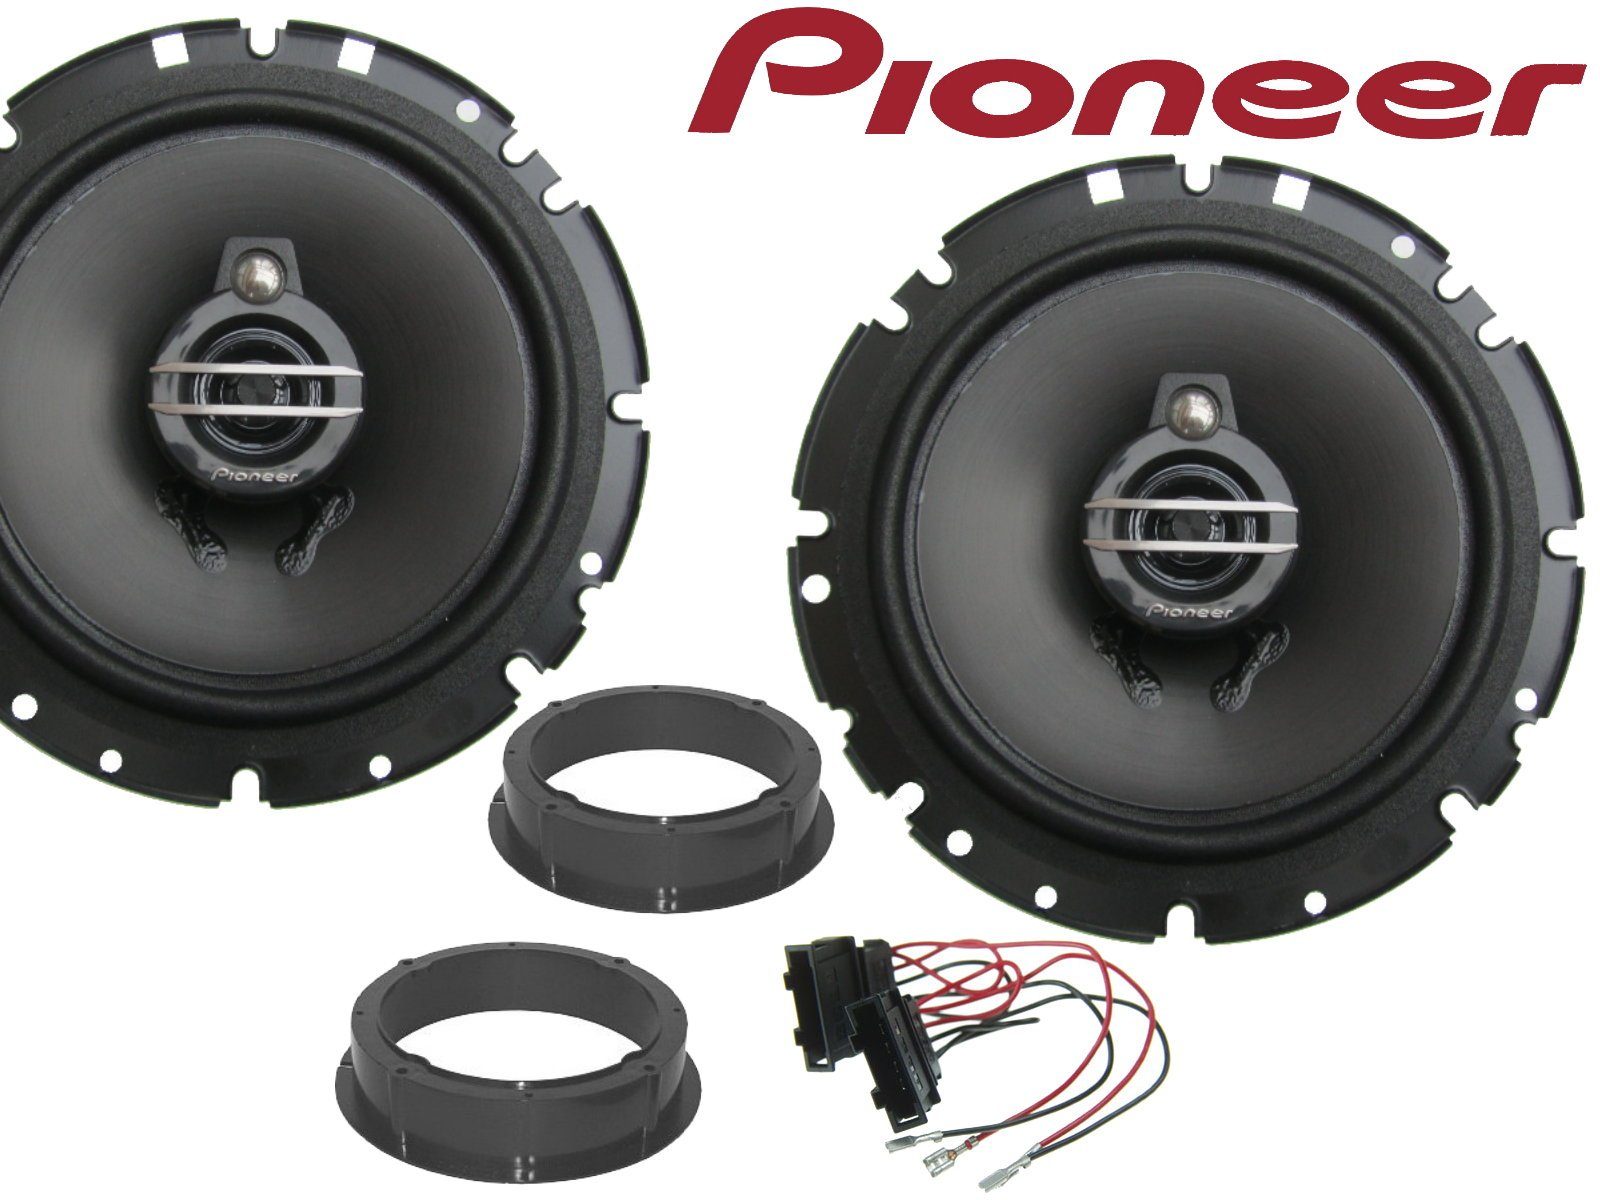 DSX Pioneer 3Wege passend für VW Lupo Bj 98-05 Lautsp Auto-Lautsprecher (40  W)